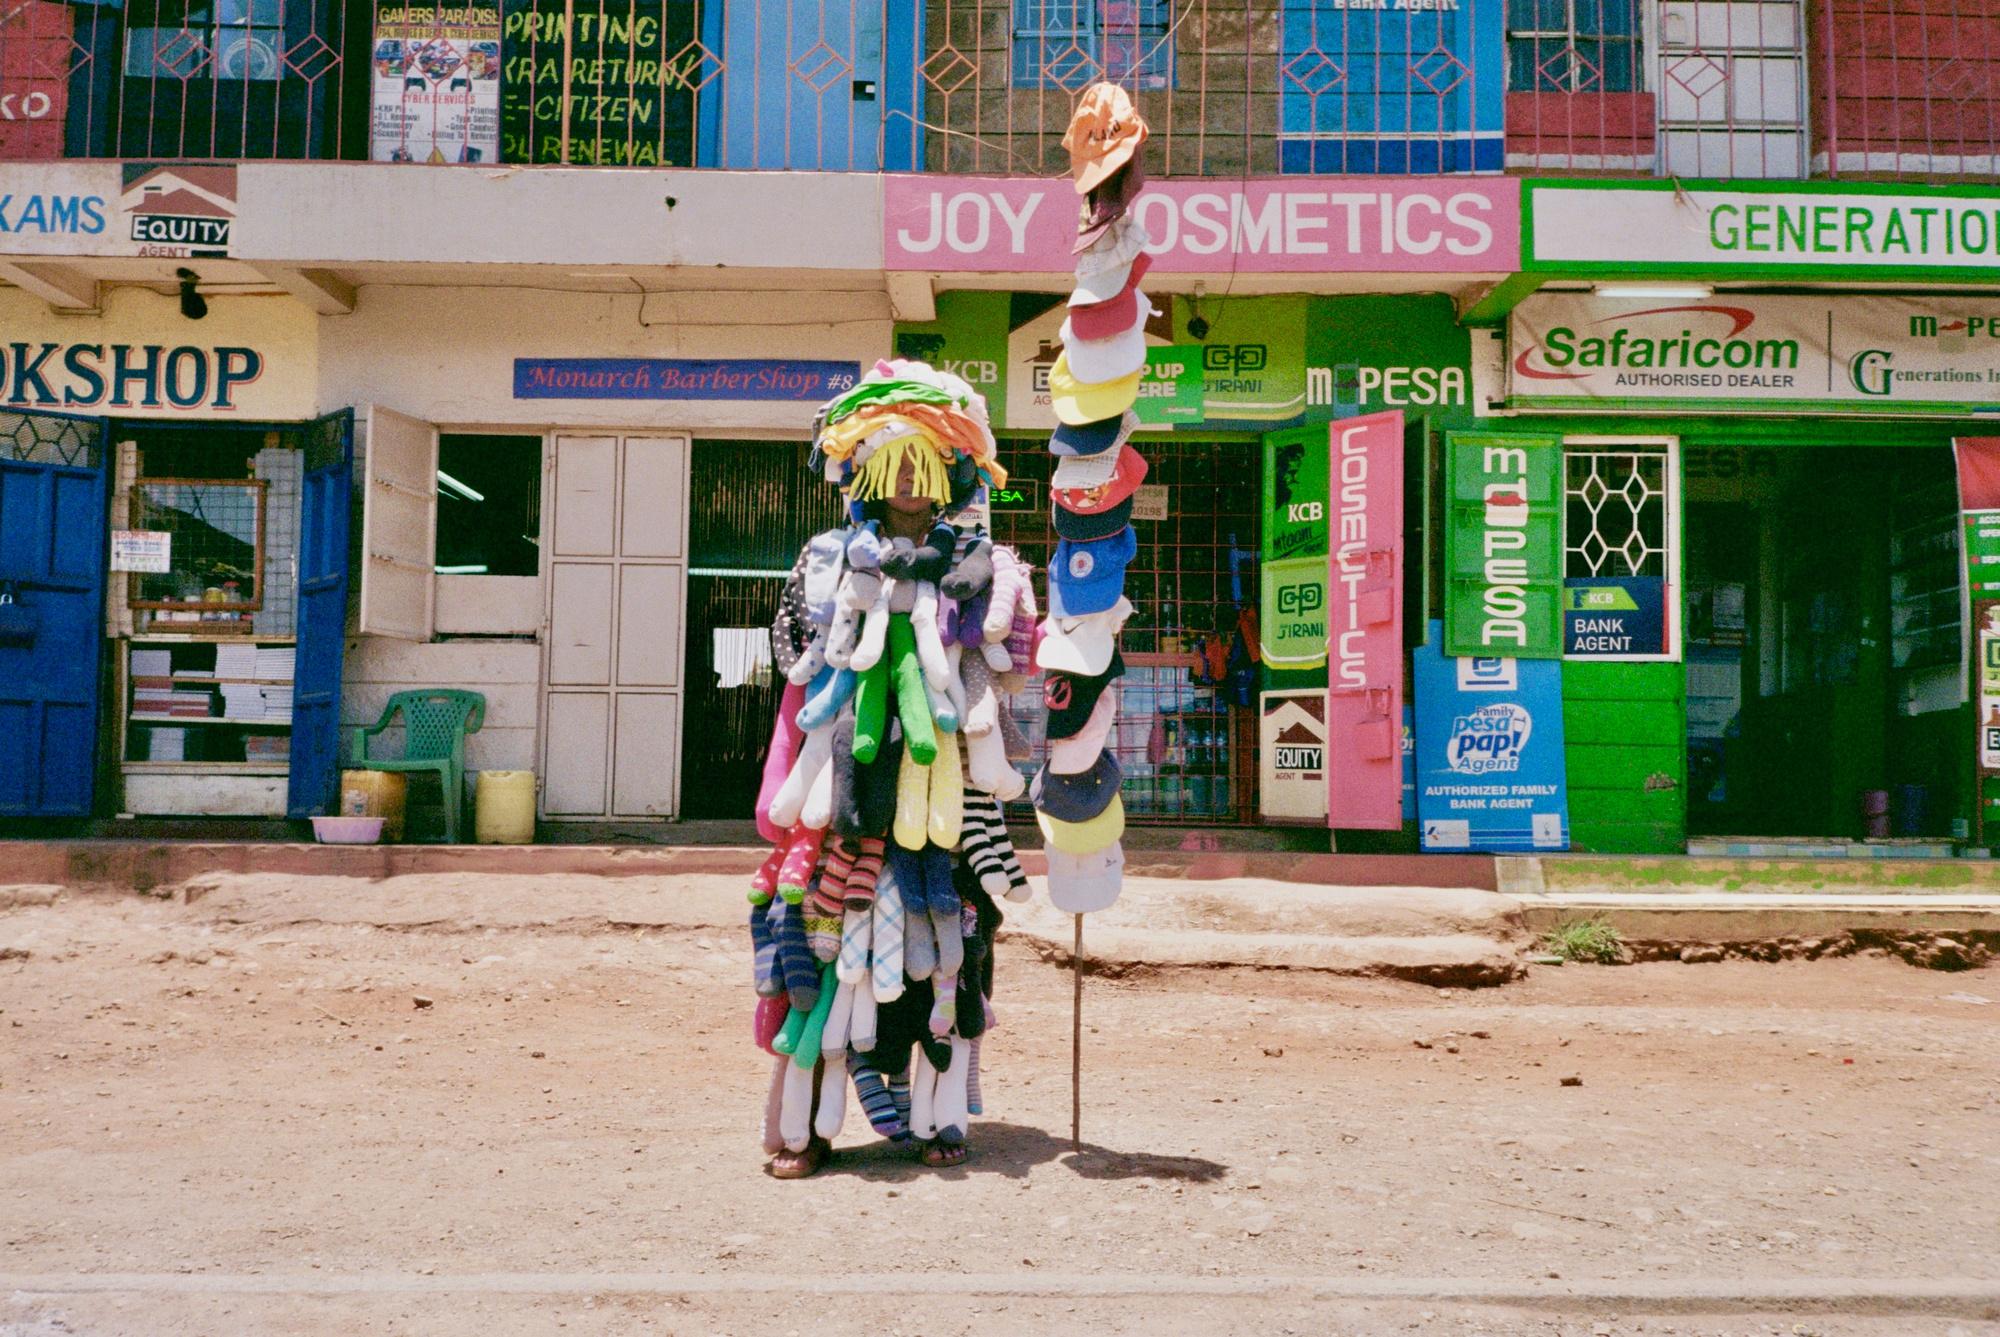 Een beeld uit de documentaire 'Goodwill Dumping' van Lisa Konno & Teddy Cherim. Ze reisden naar Kenia om te achterhalen wat er gebeurt met kledingstukken die in kledingcontainers worden gegooid.